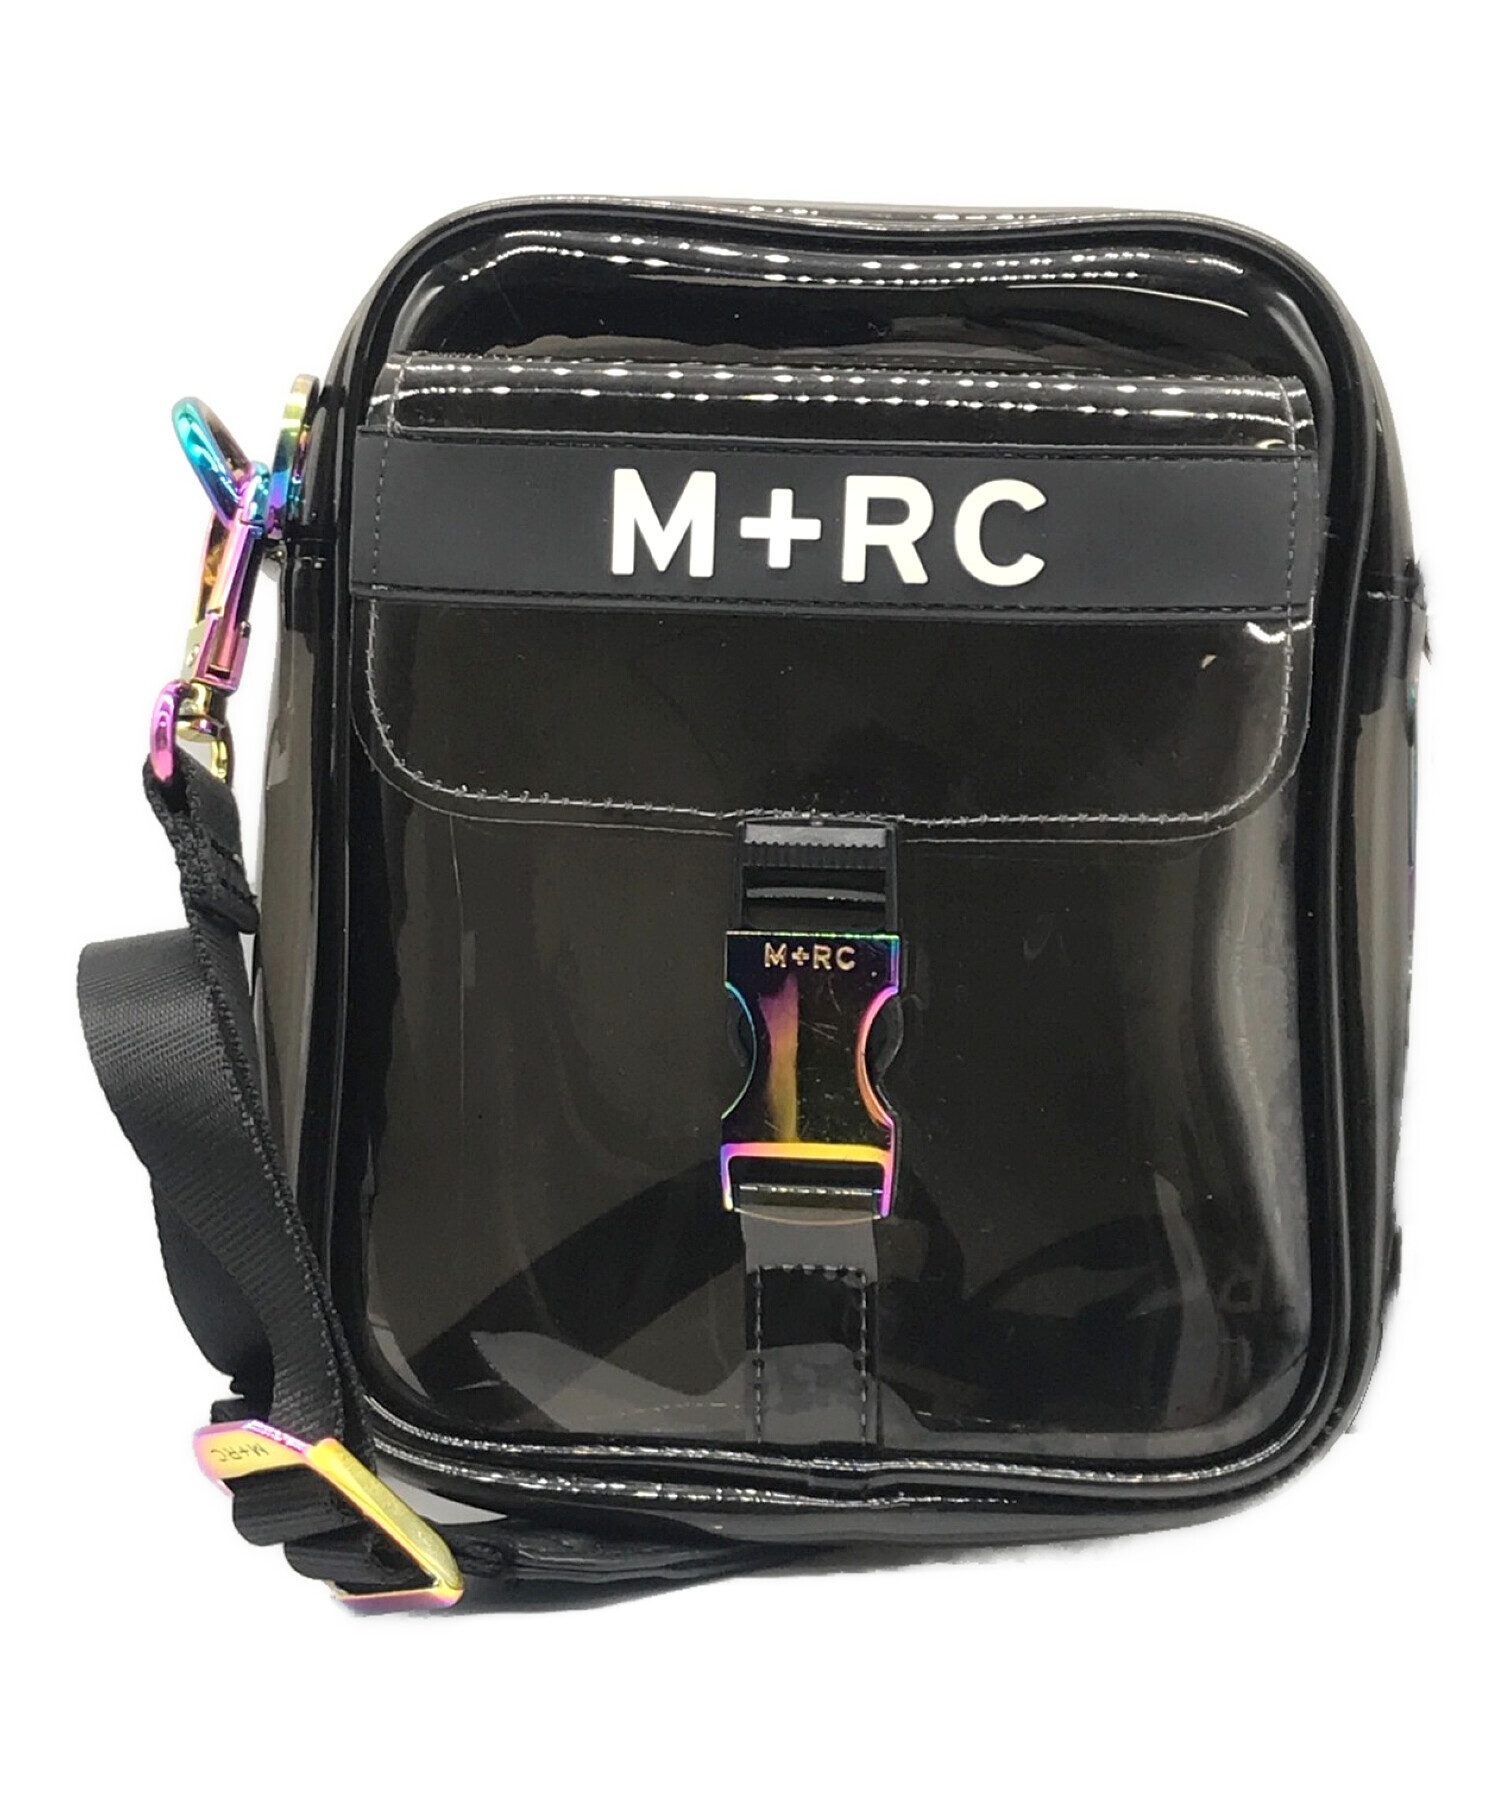 m+rc noir メッセンジャーバッグバッグ